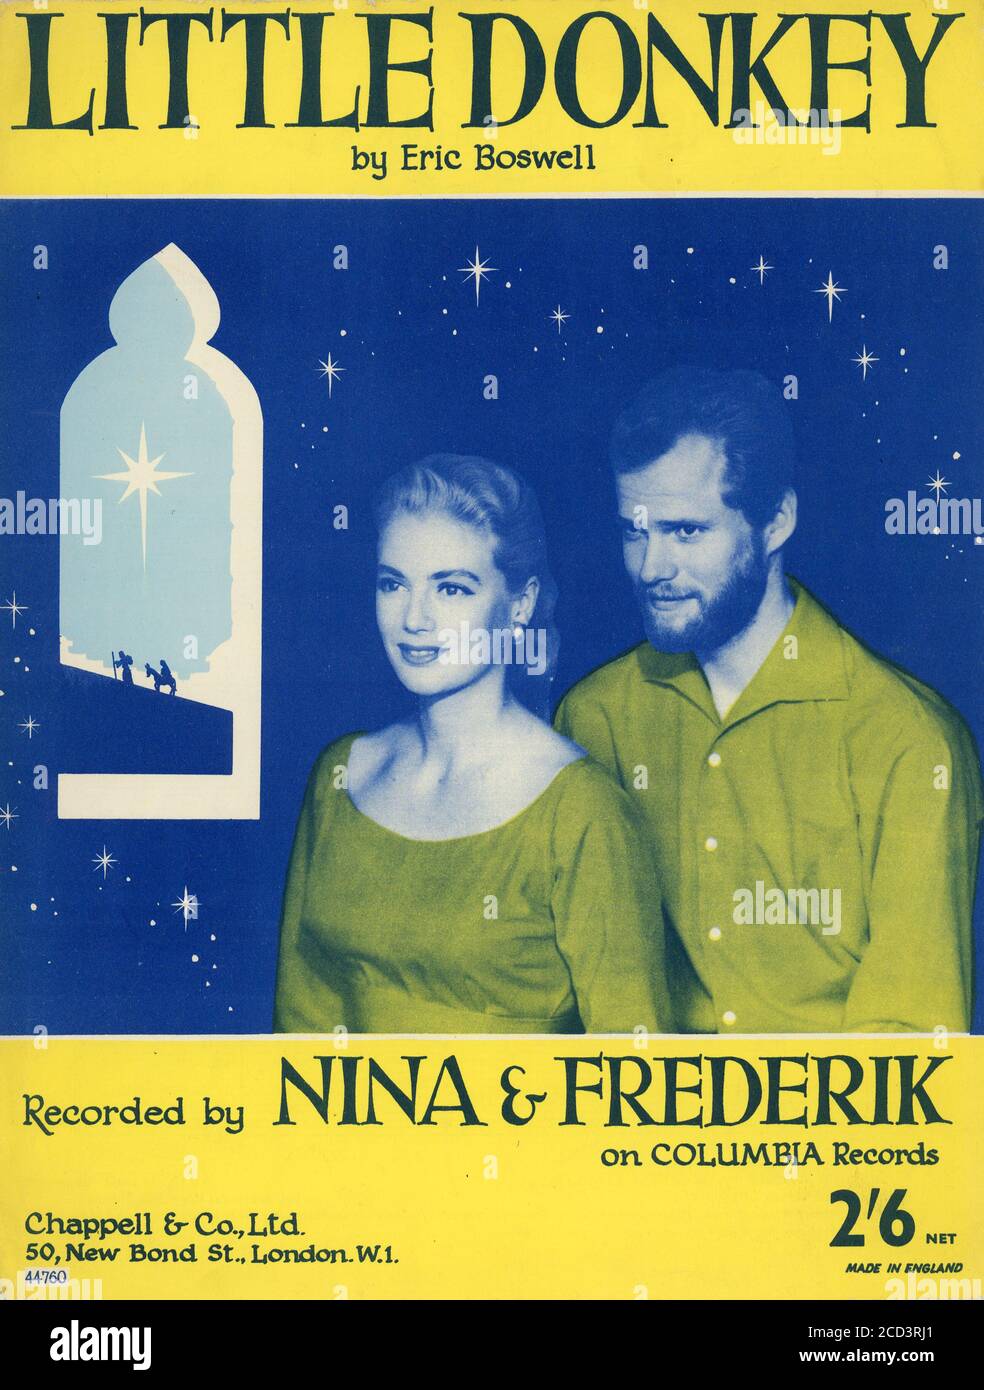 Sheet Music - Little Donkey - Nina & Frederik - 1959 Stock Photo